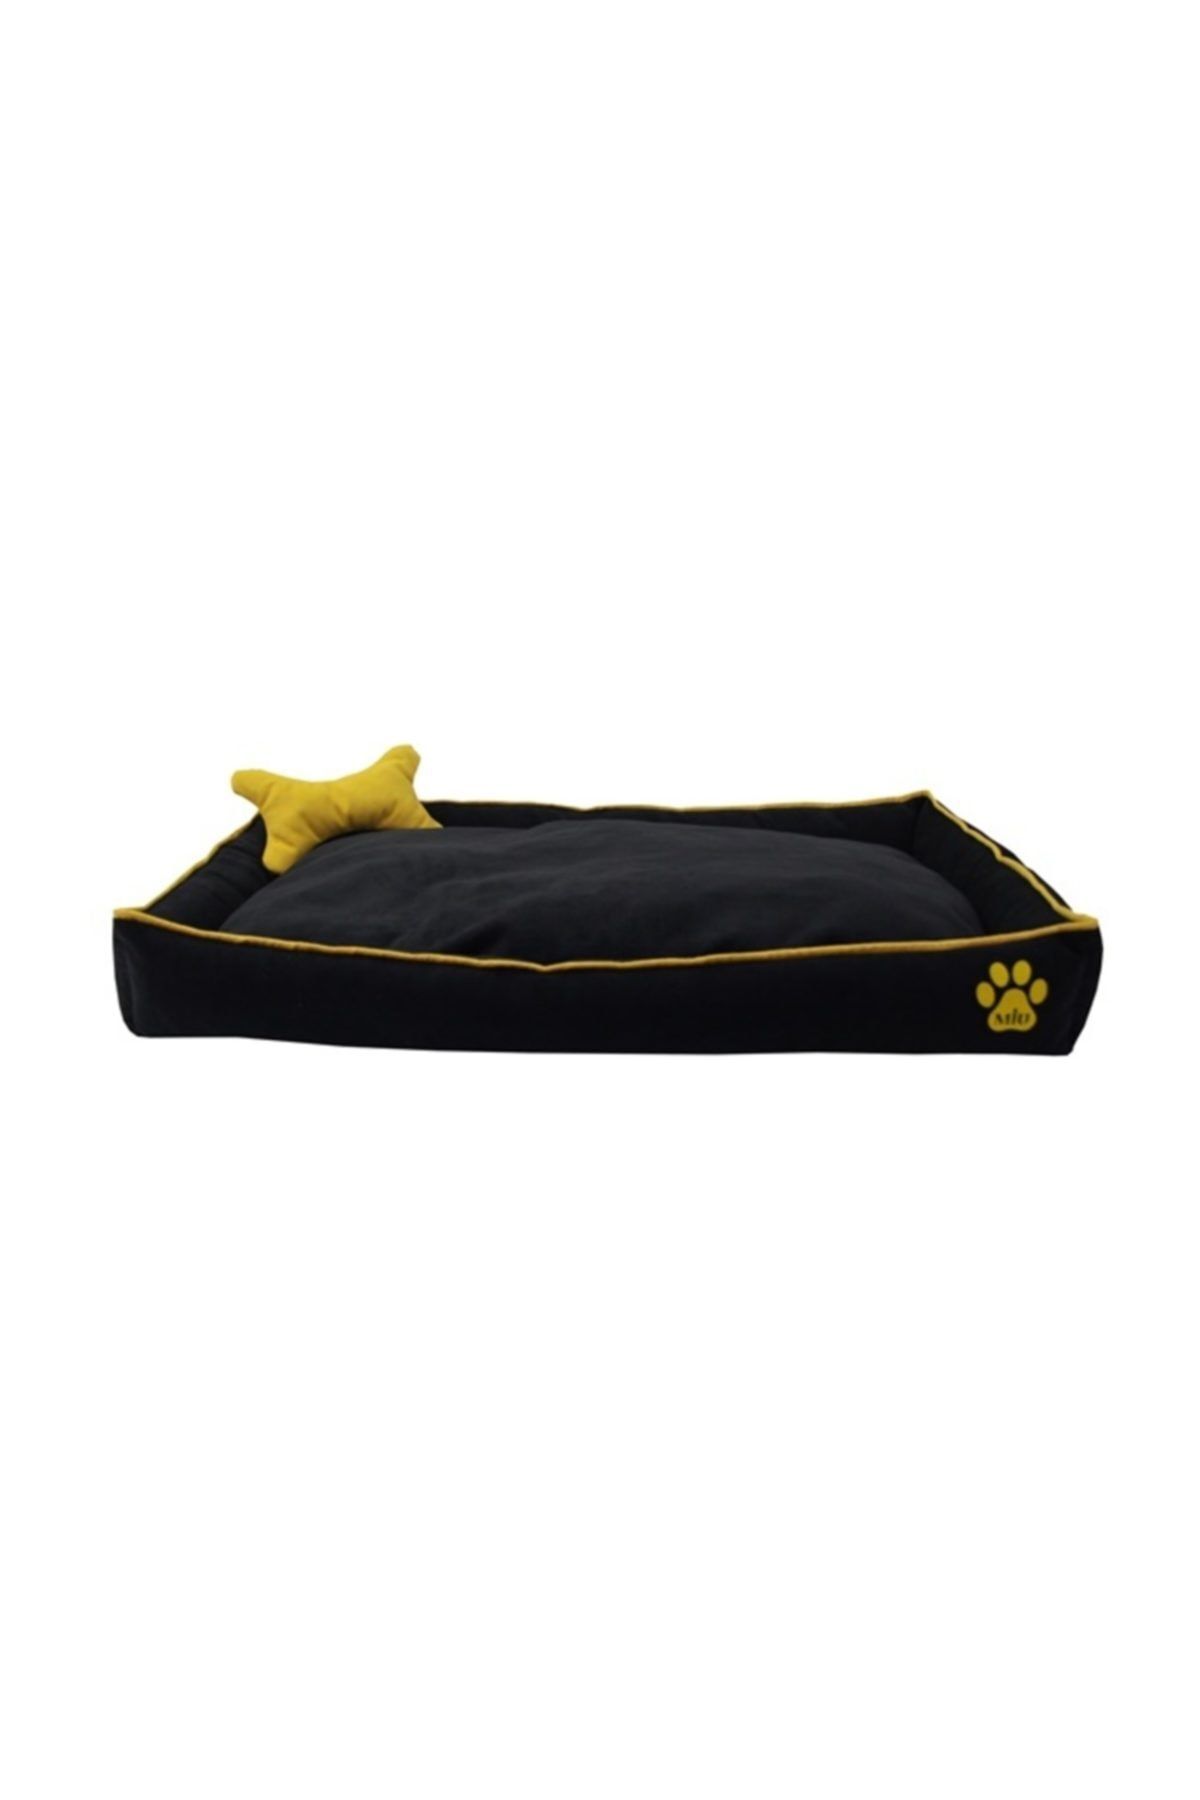 Miu Miu Köpek Yatağı Kemik Yastıklı 14*70*100 cm Siyah Large